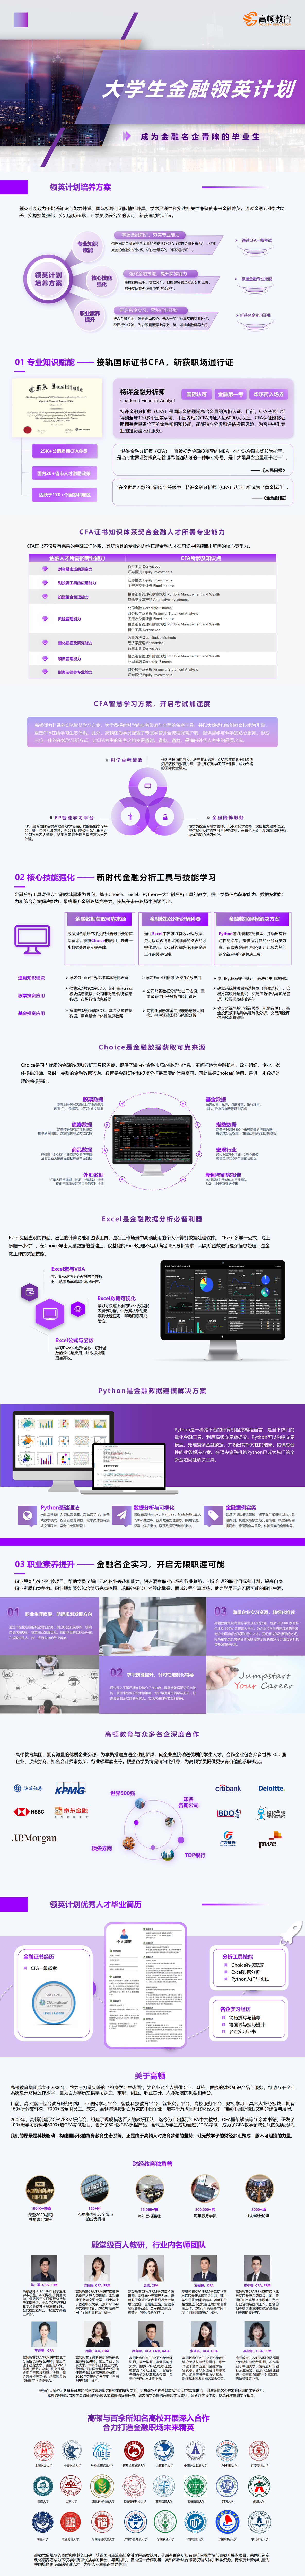 https://simg01.gaodunwangxiao.com/uploadfiles/product-center/202306/30/e6477_20230630090021.png